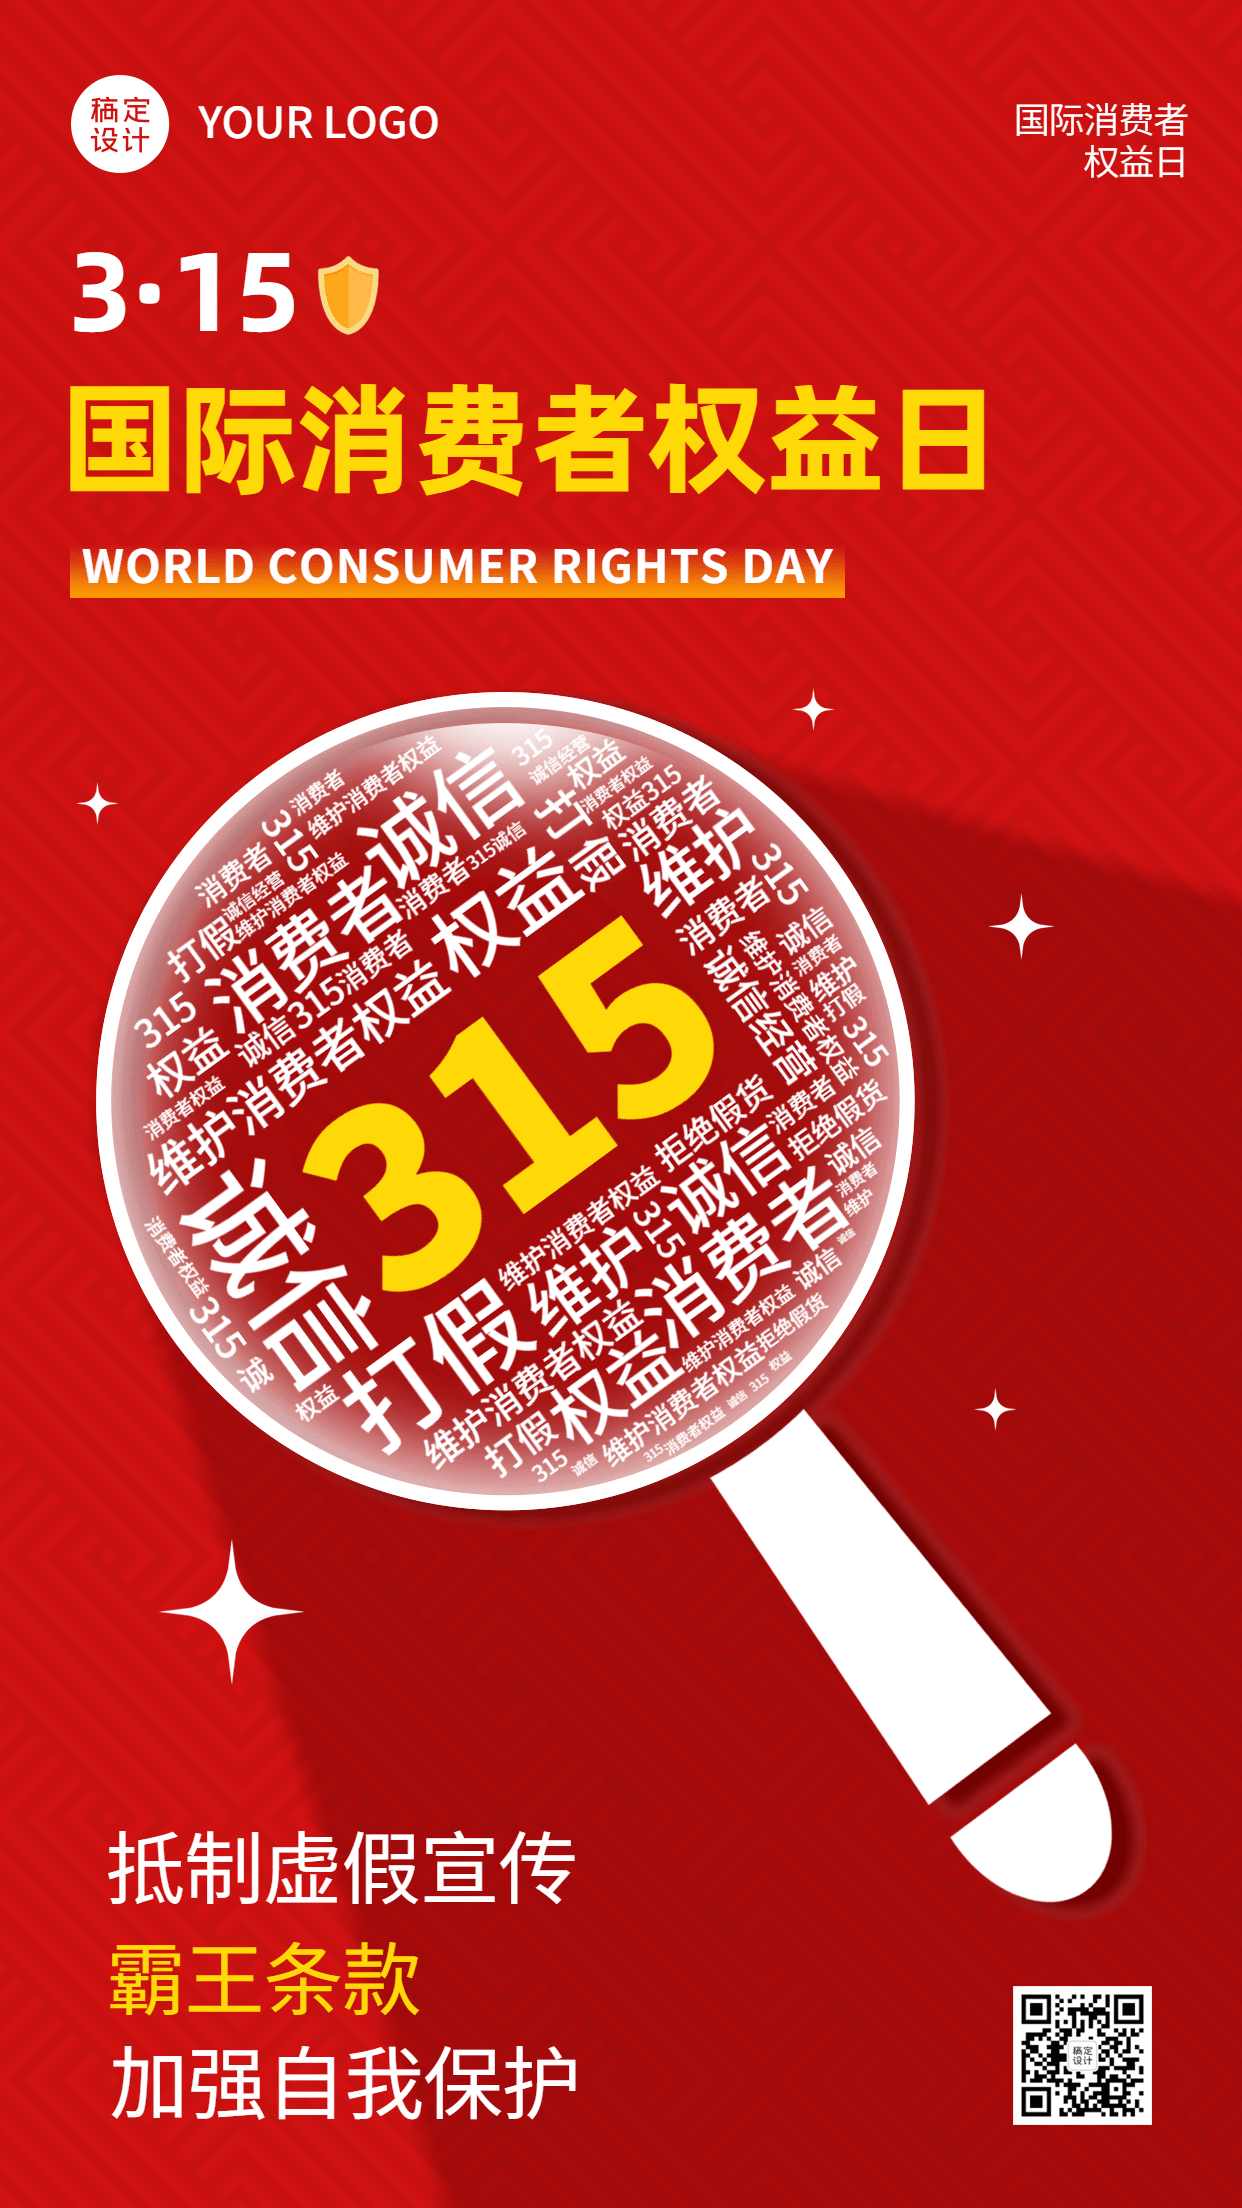 3.15消费者权益日节日宣传排版手机海报预览效果